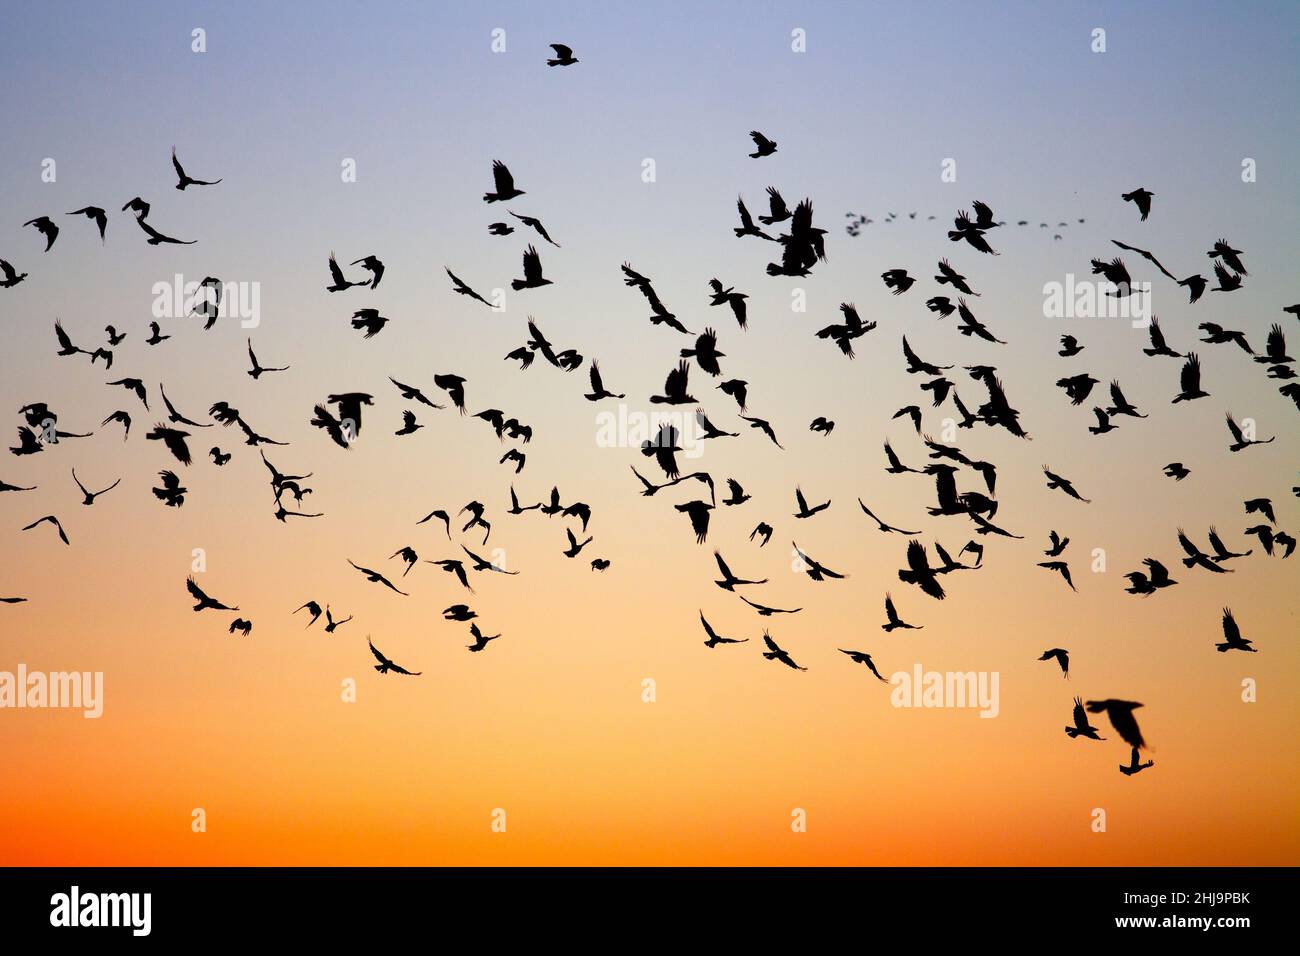 Un grand troupeau d'oiseaux noirs volants migrateurs silhouetés contre un coucher de soleil d'hiver bleu et orange. Banque D'Images